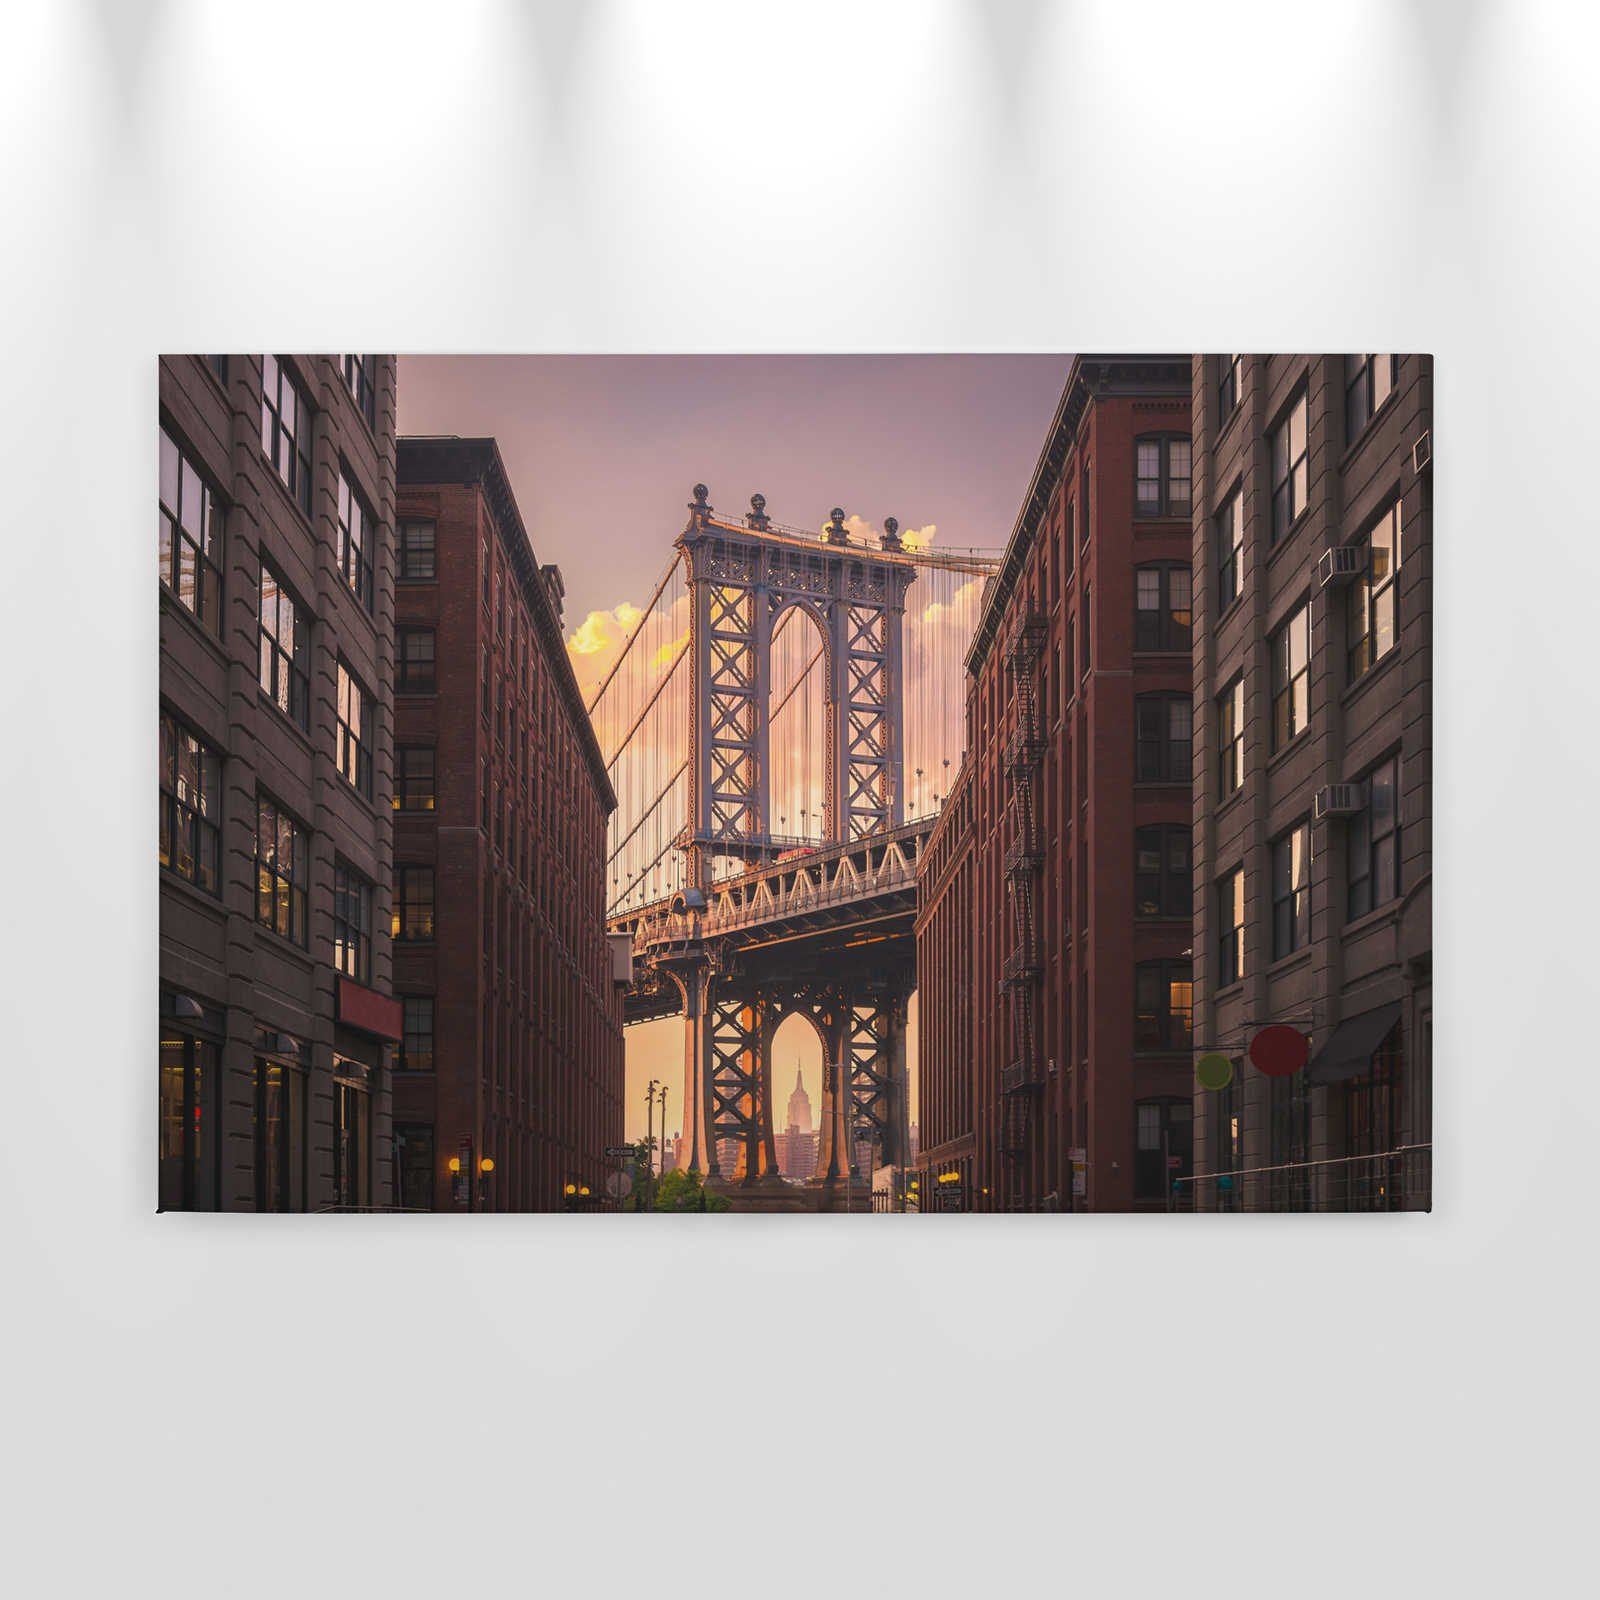             Lei Wall con il ponte di Brooklyn da Street View - 0,90 m x 0,60 m
        